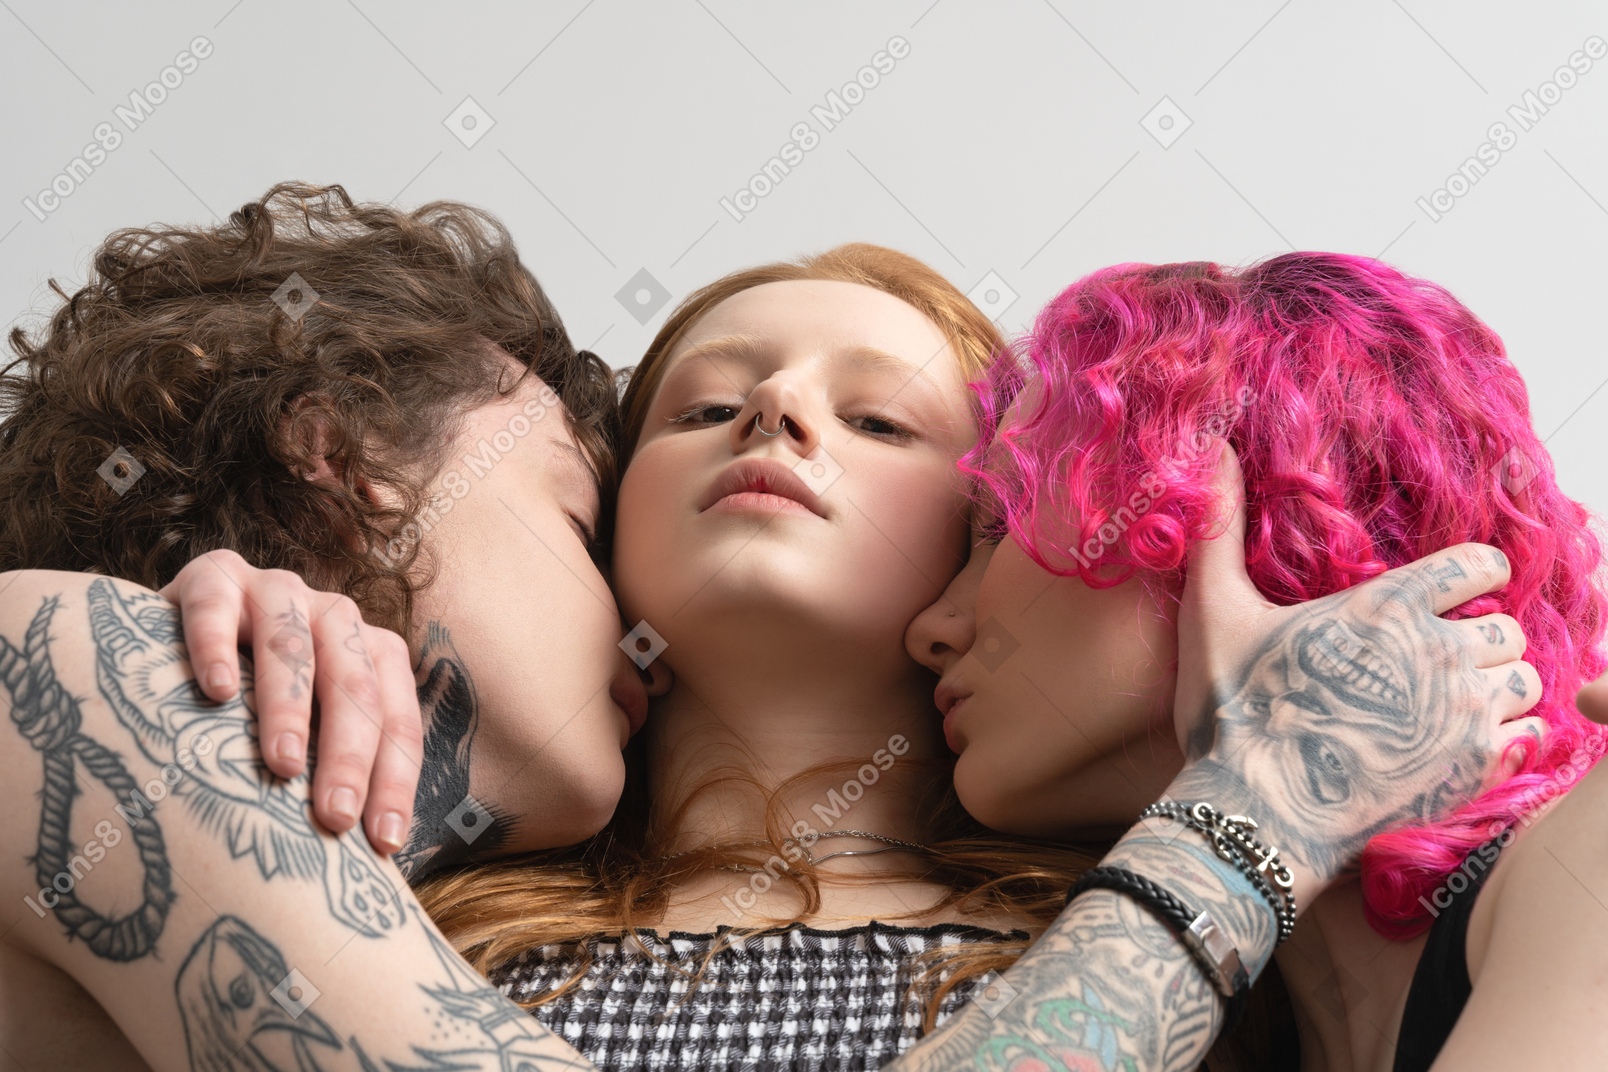 Порно фото со спящими девушками